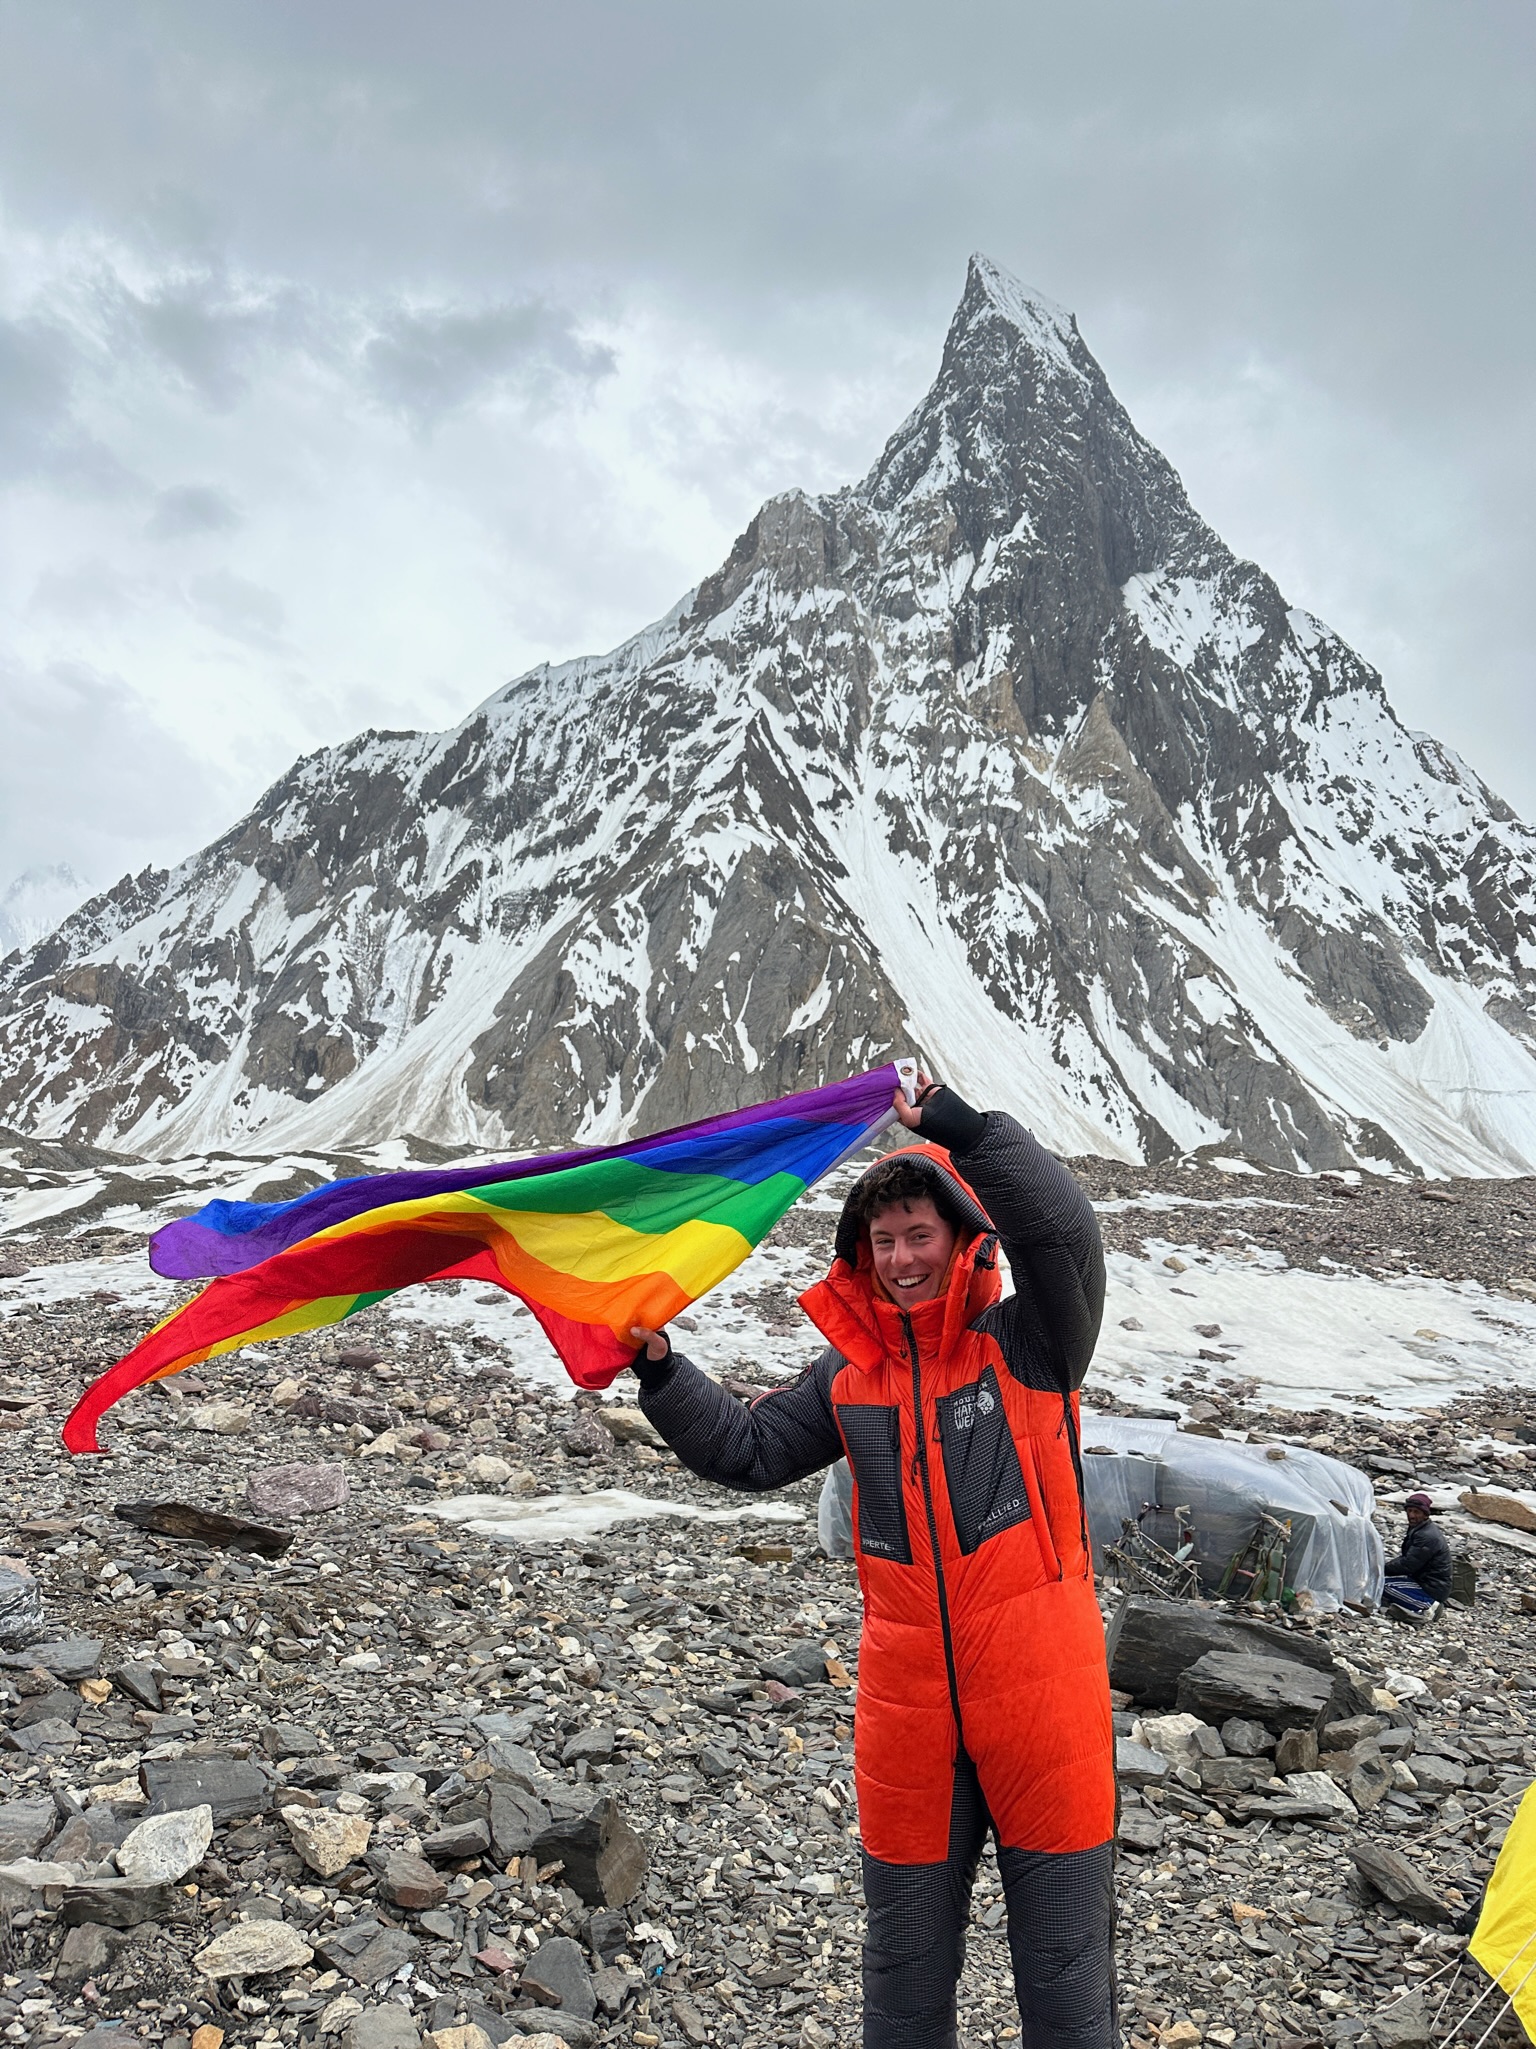 Queer mountain climber Aidan Hyman with rainbow flag on mountain.